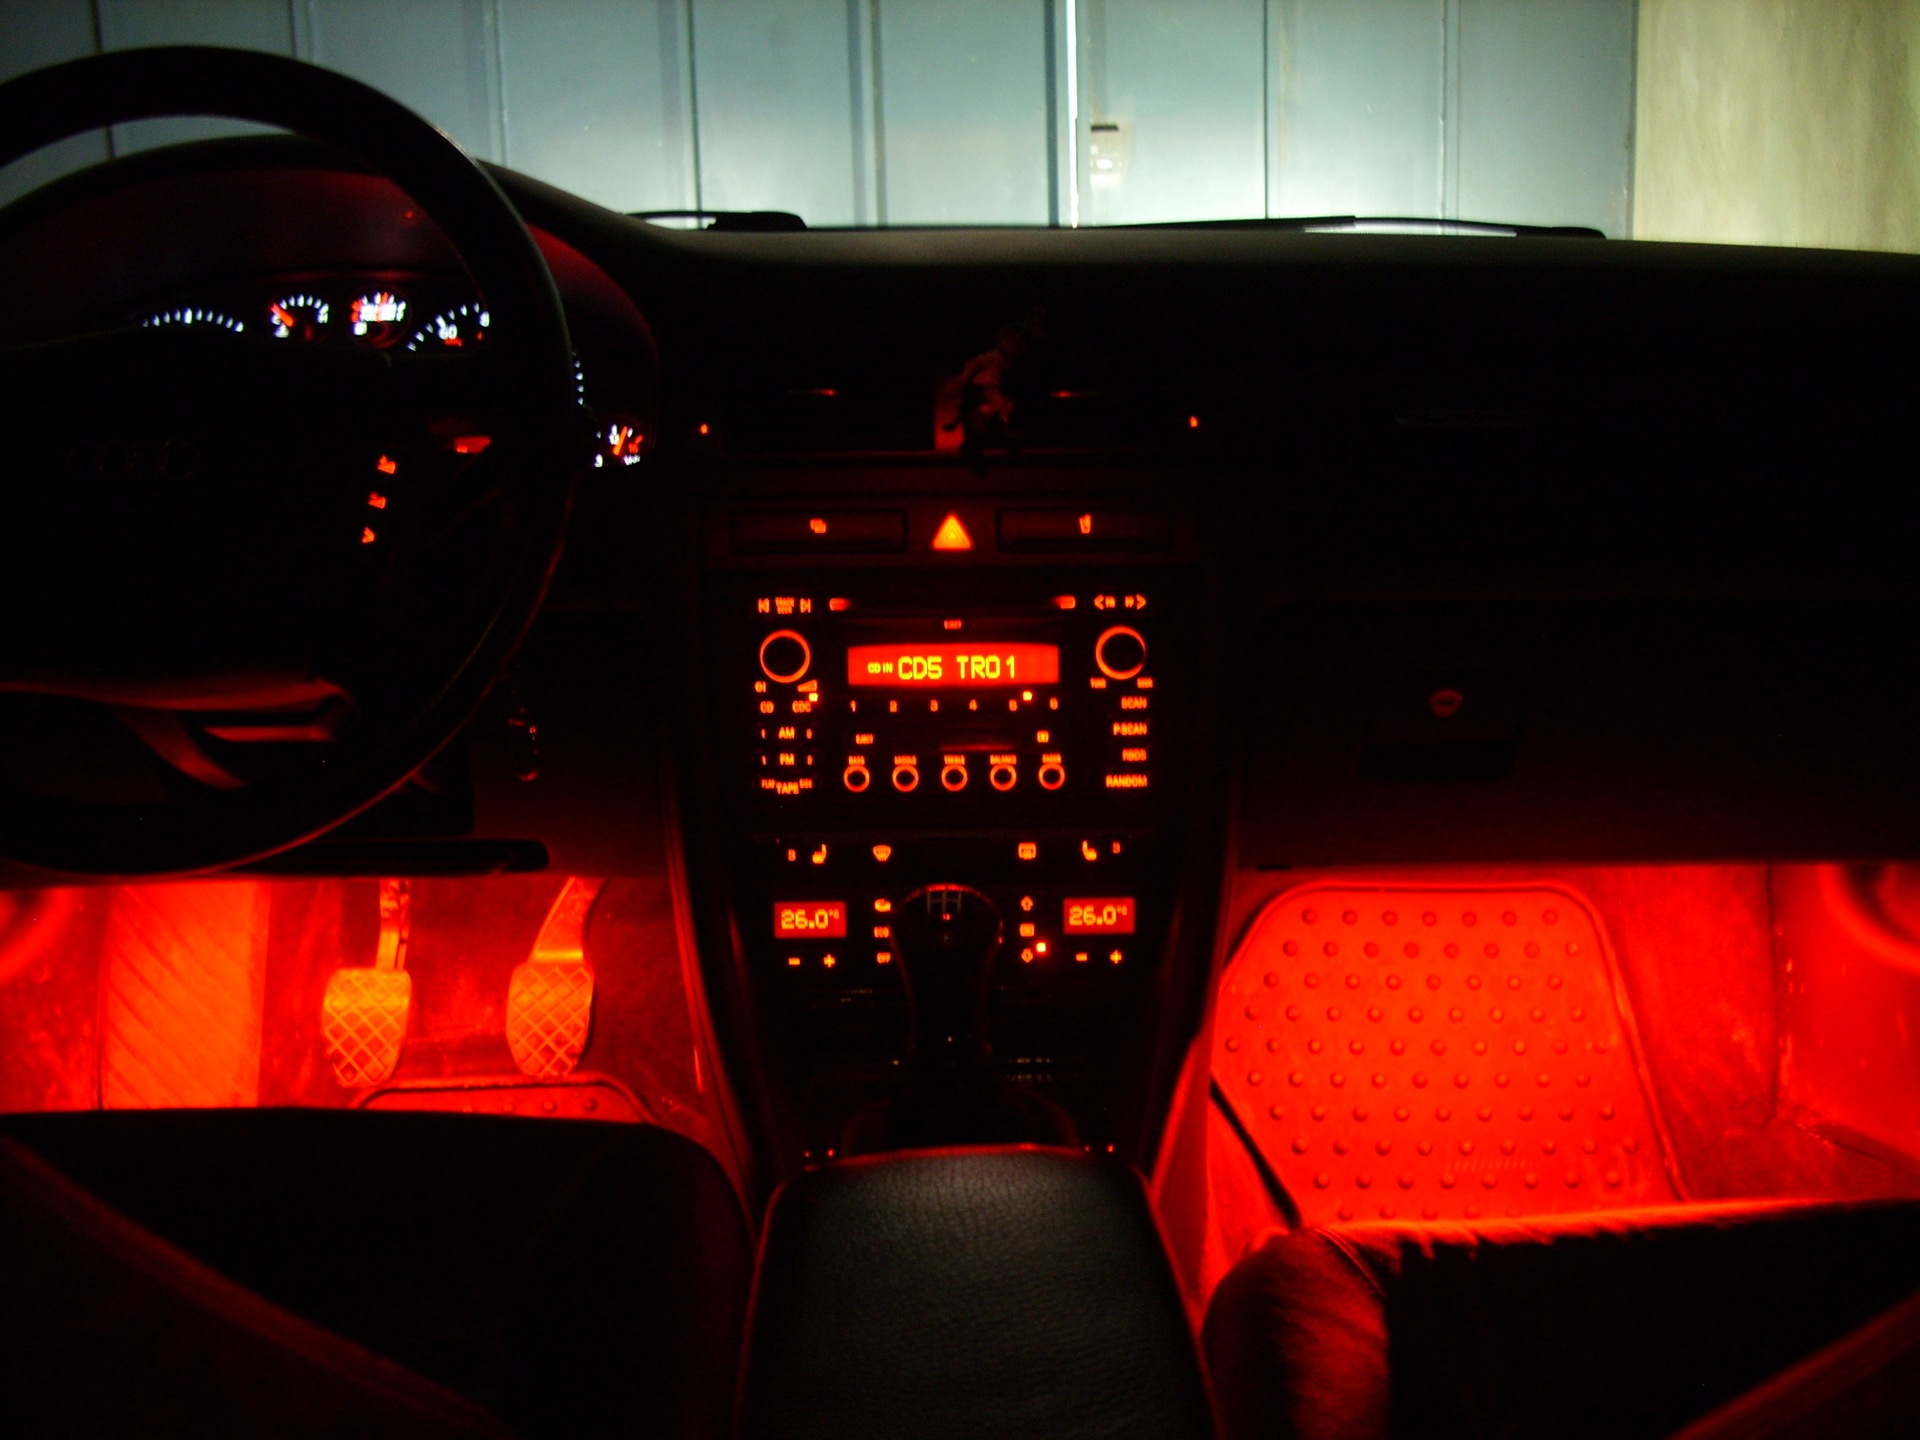 Купить красную подсветку. Красная подсветка салона. Красная подсветка в авто. Машины с красной подсветкой. 210 Красная подсветка салона.